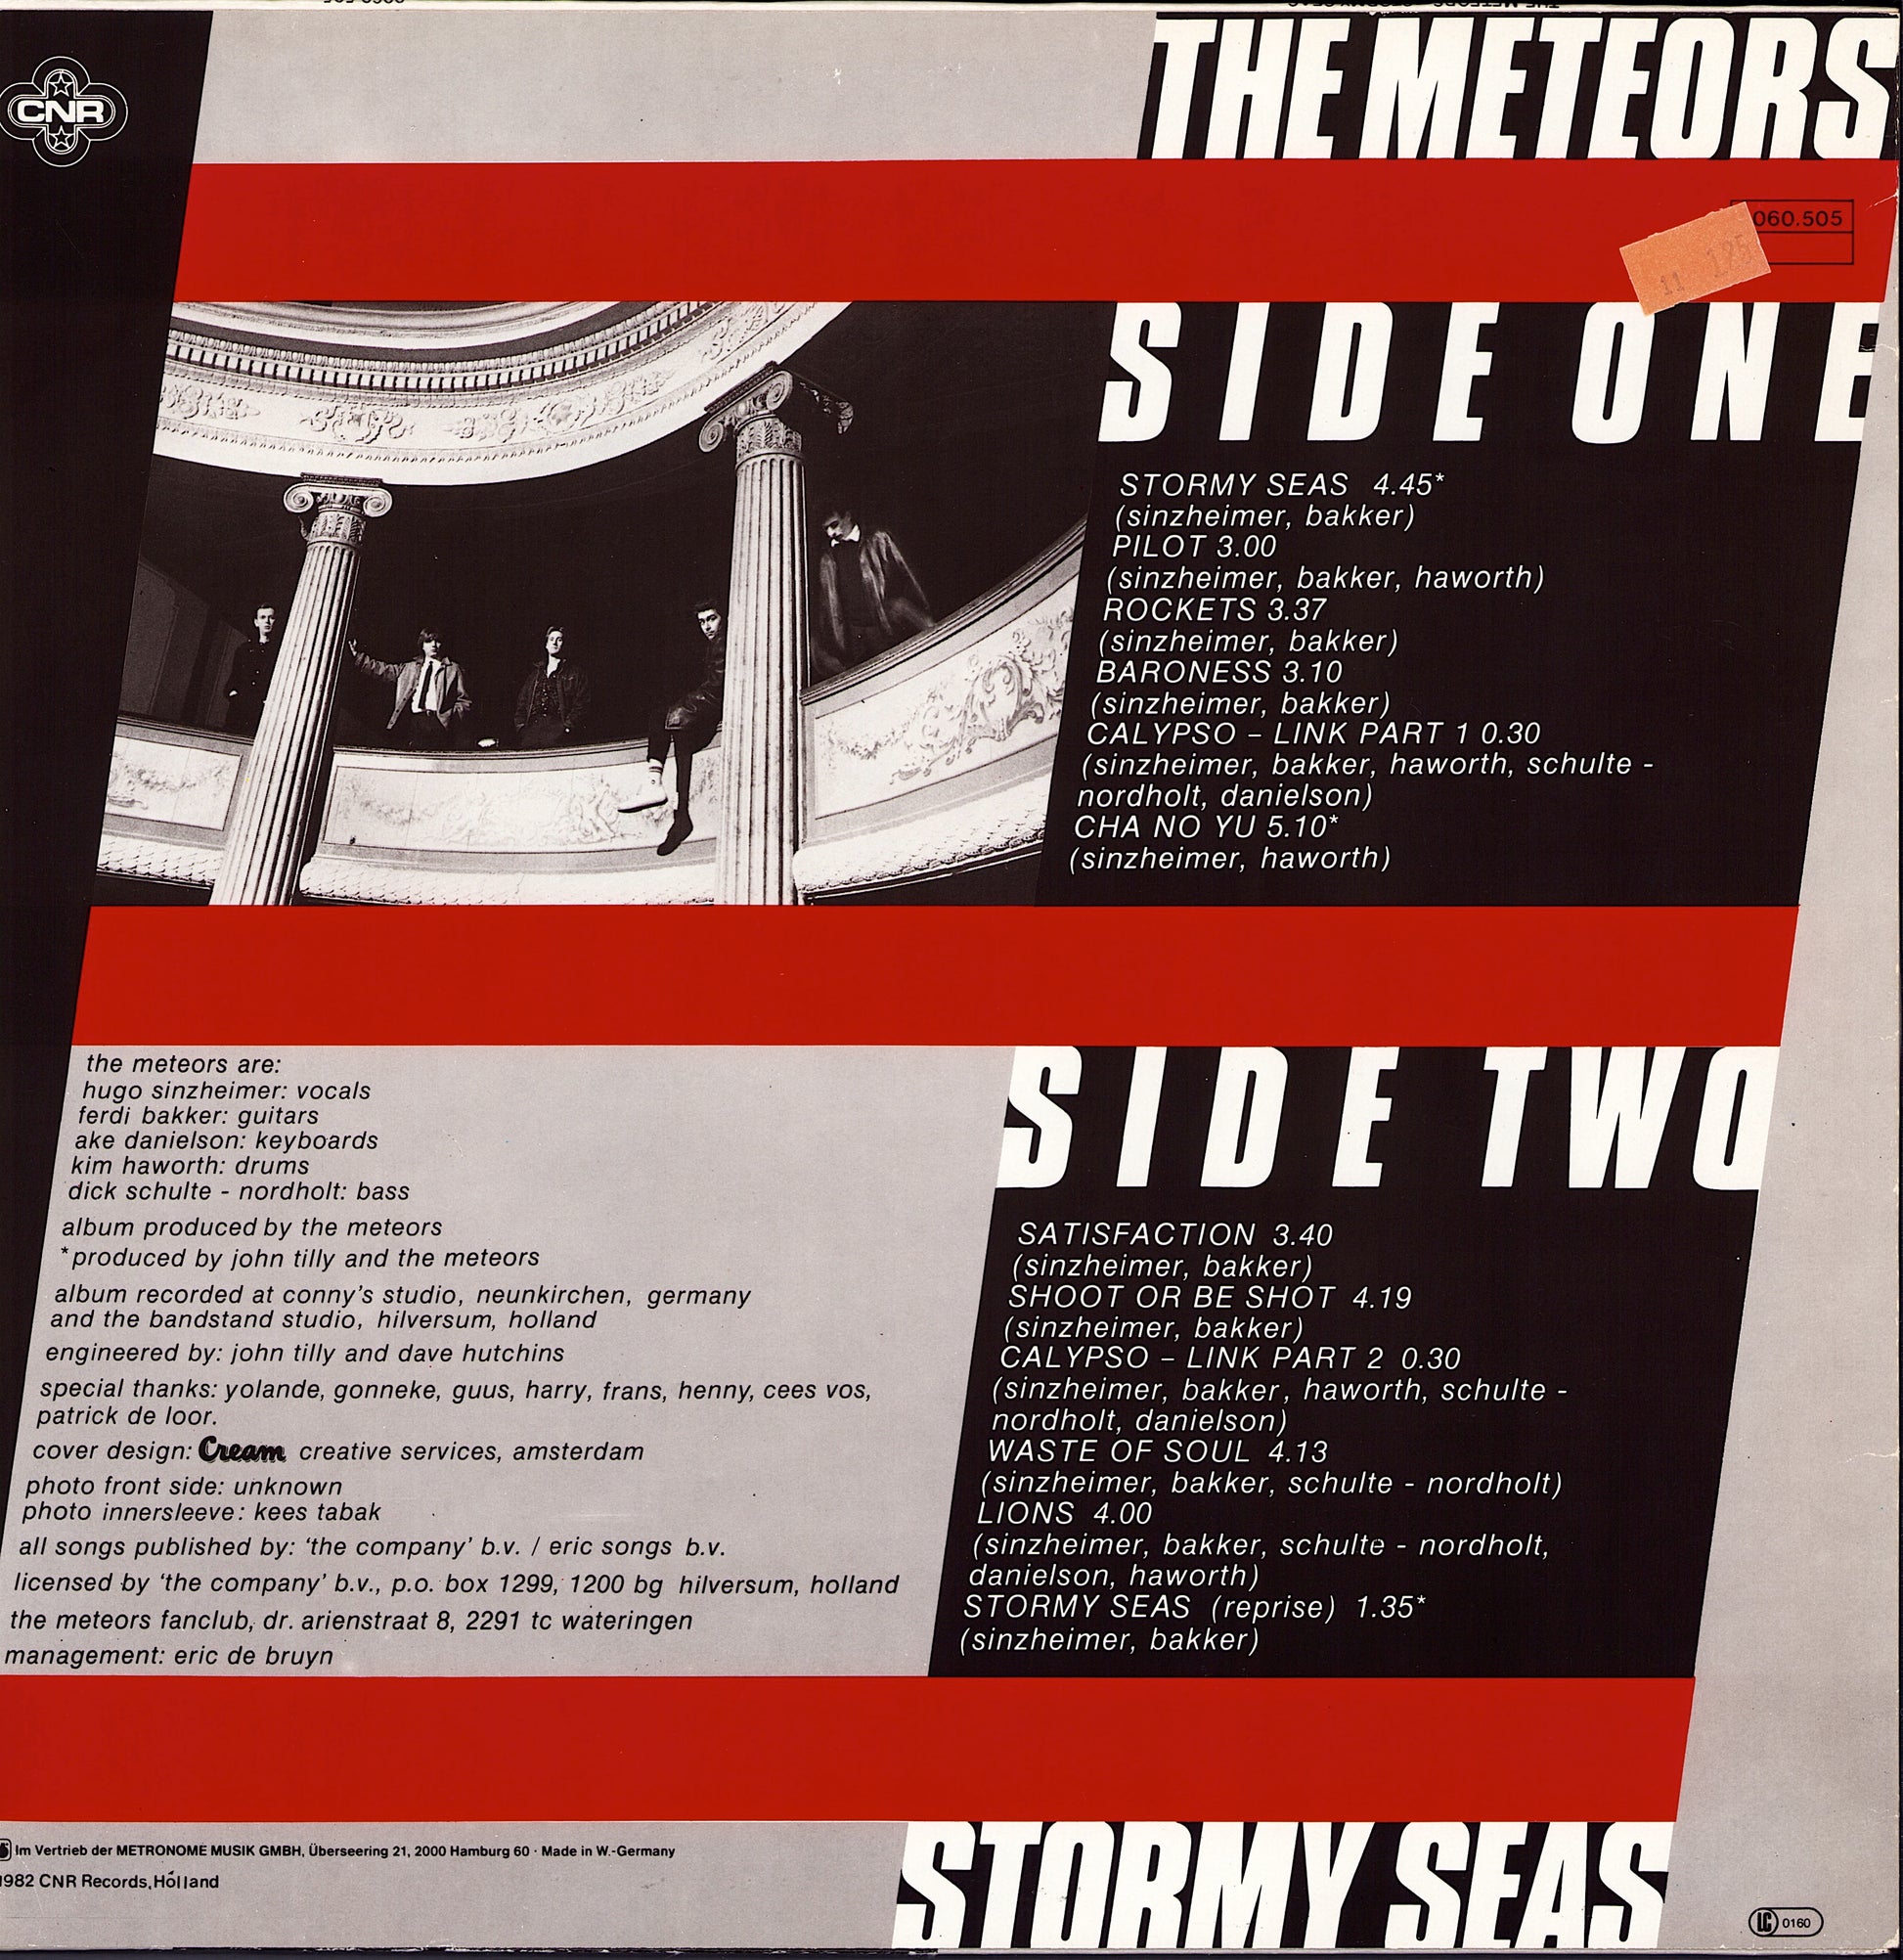 The Meteors ‎– Stormy Seas Vinyl LP